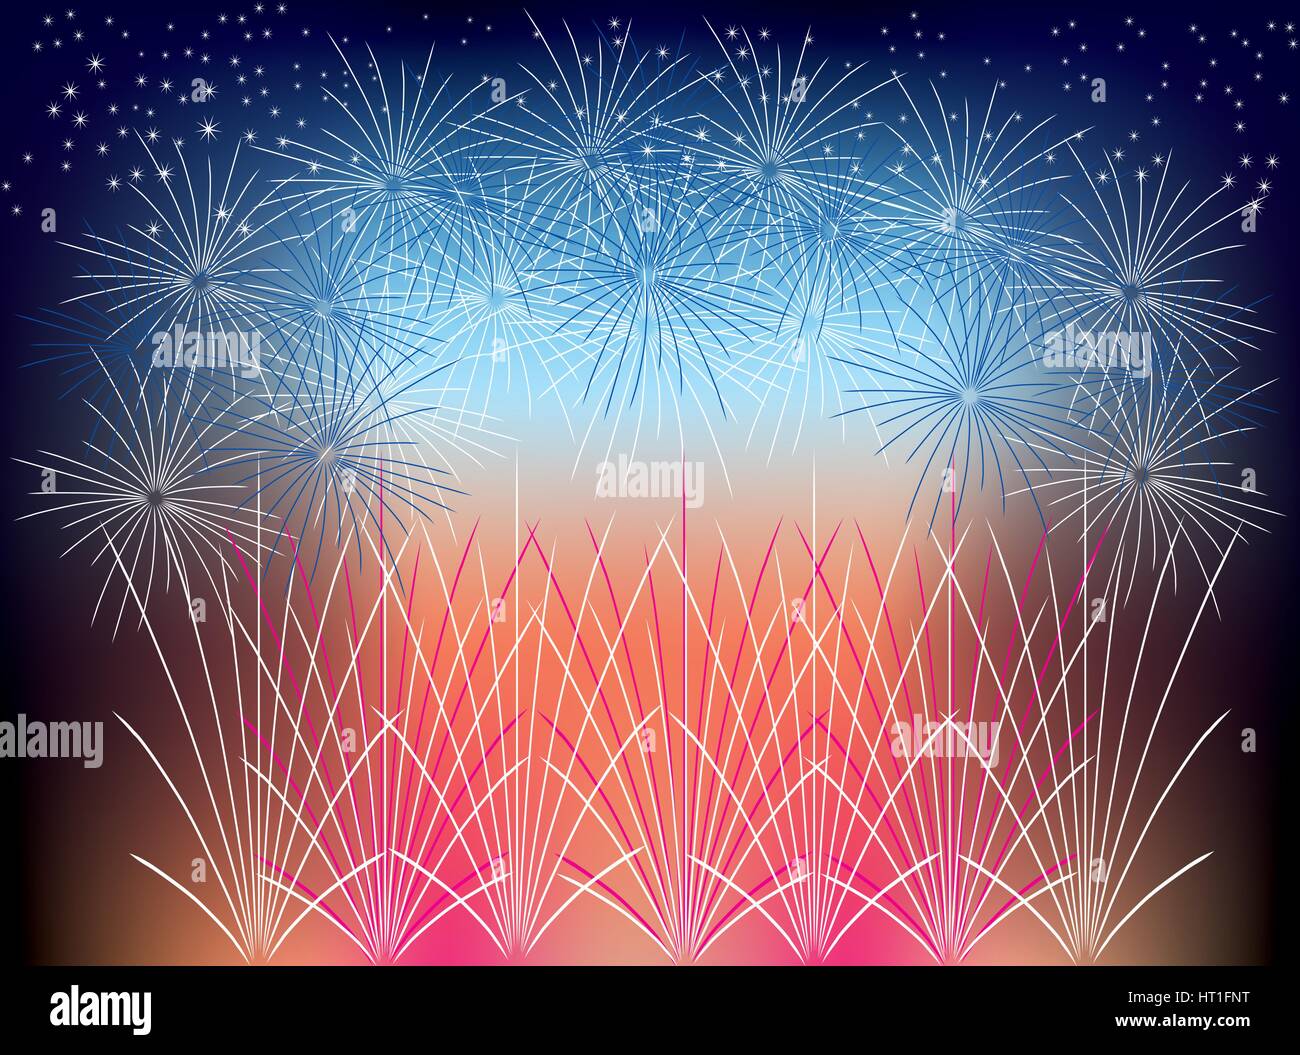 Bonne Année avec Fireworks Illustration de Vecteur